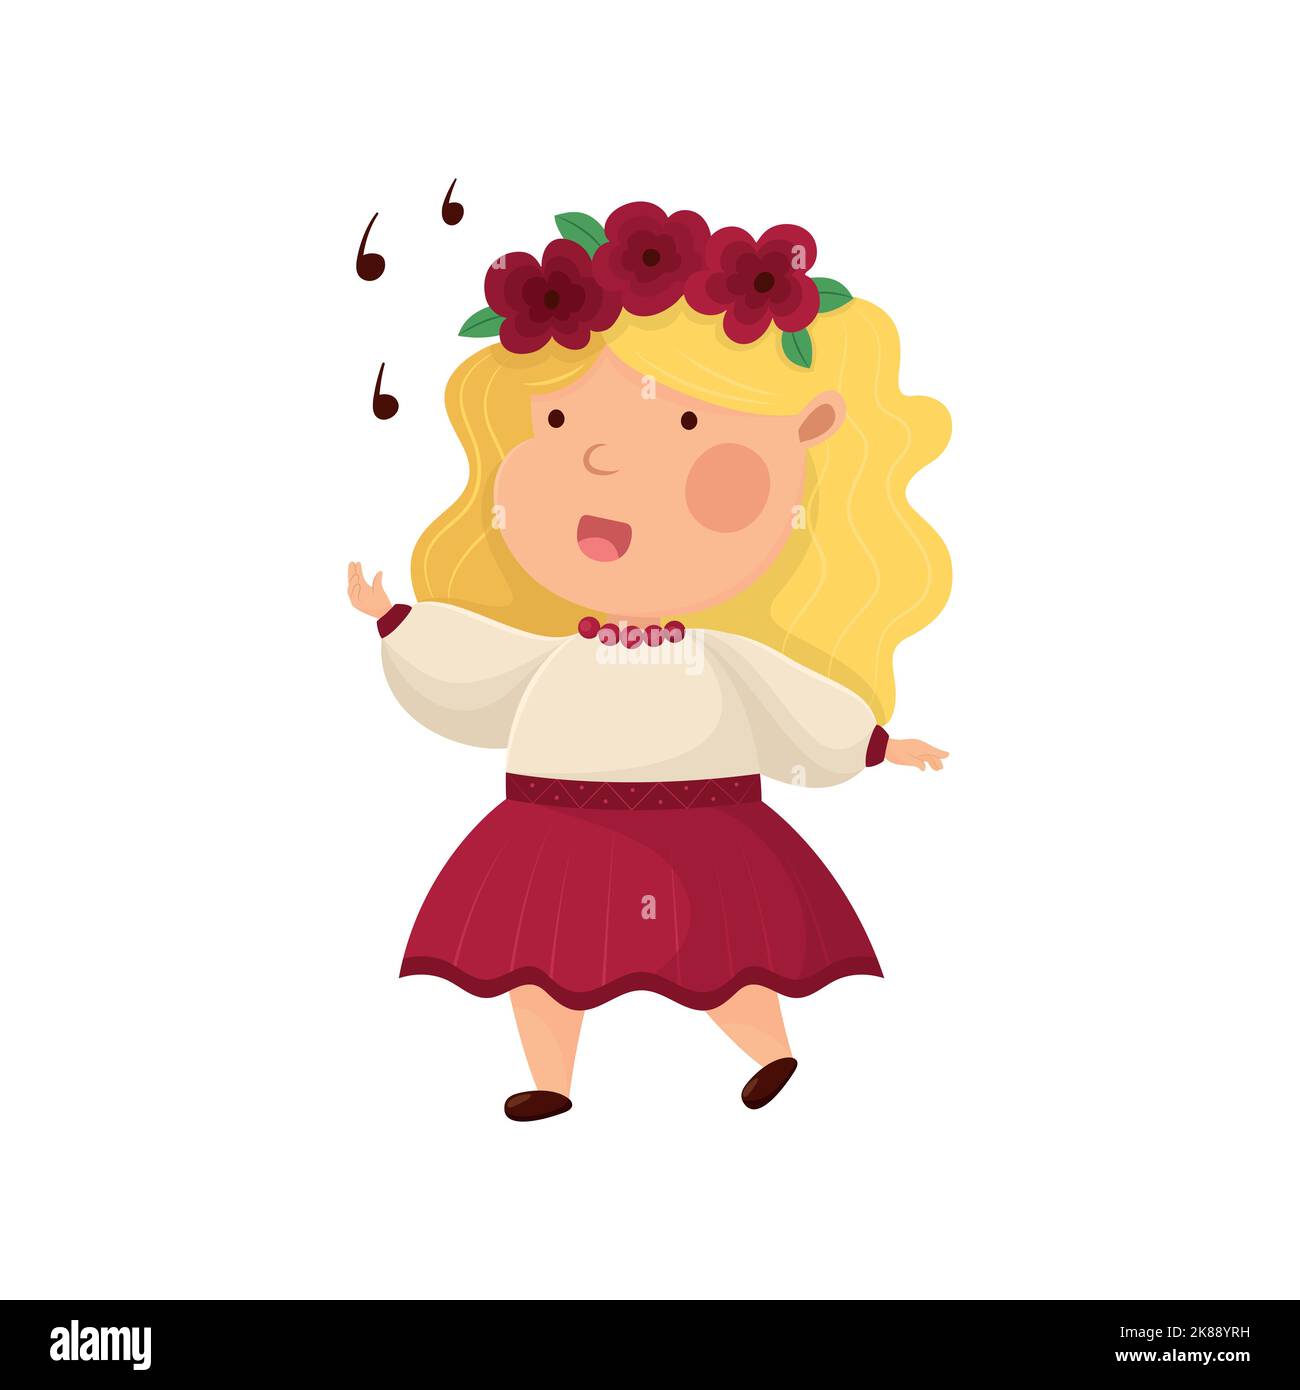 Petite fille ukrainienne chantant. Joli personnage de dessin animé. Vêtements et adresse traditionnels nationaux ukrainiens. La culture populaire de l'Ukraine. Titre comme symbole Illustration de Vecteur